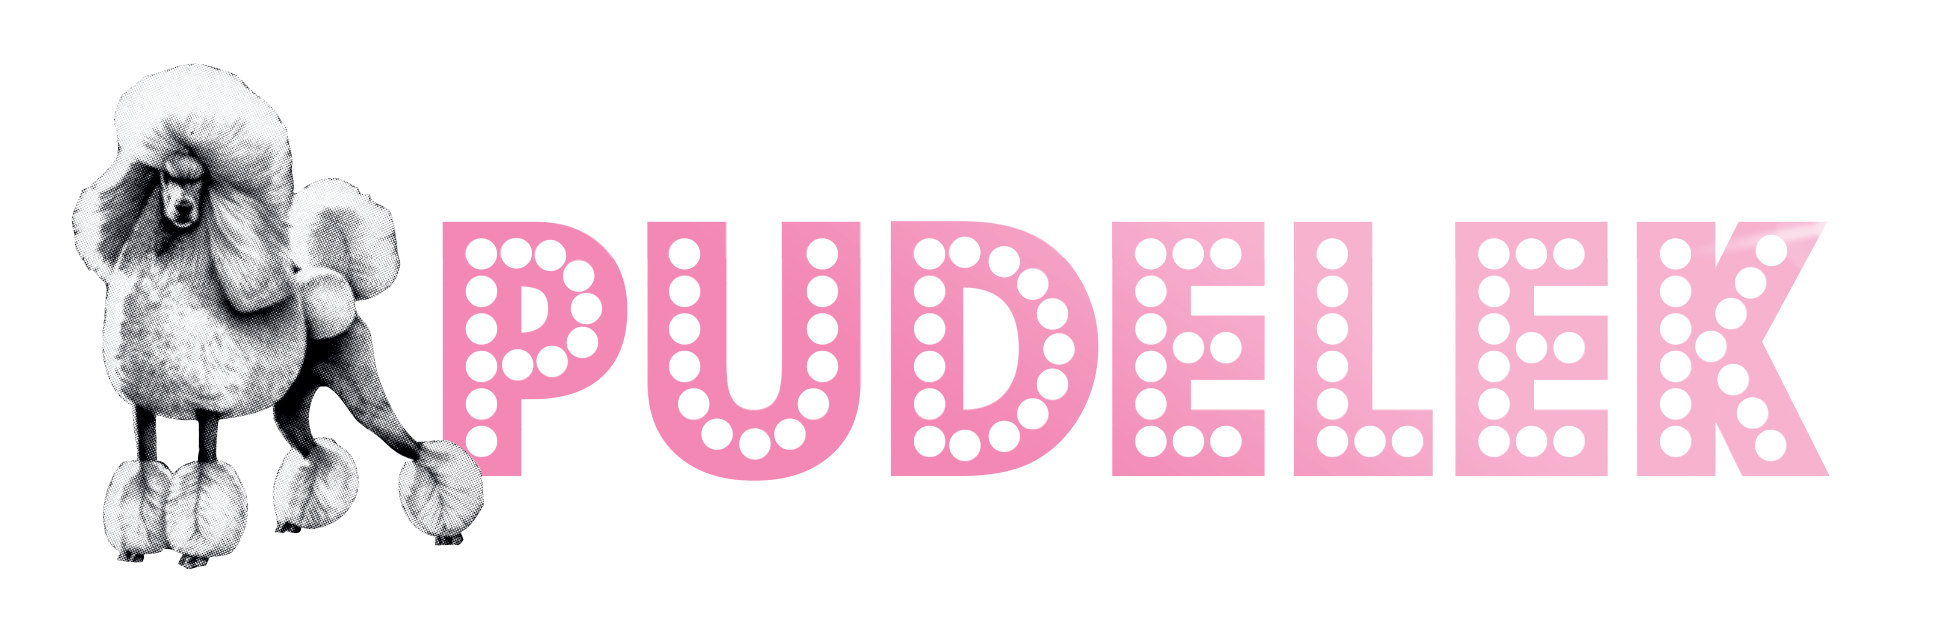 Serwis PUDELEK w nowej odsłonie Design pudelek logo